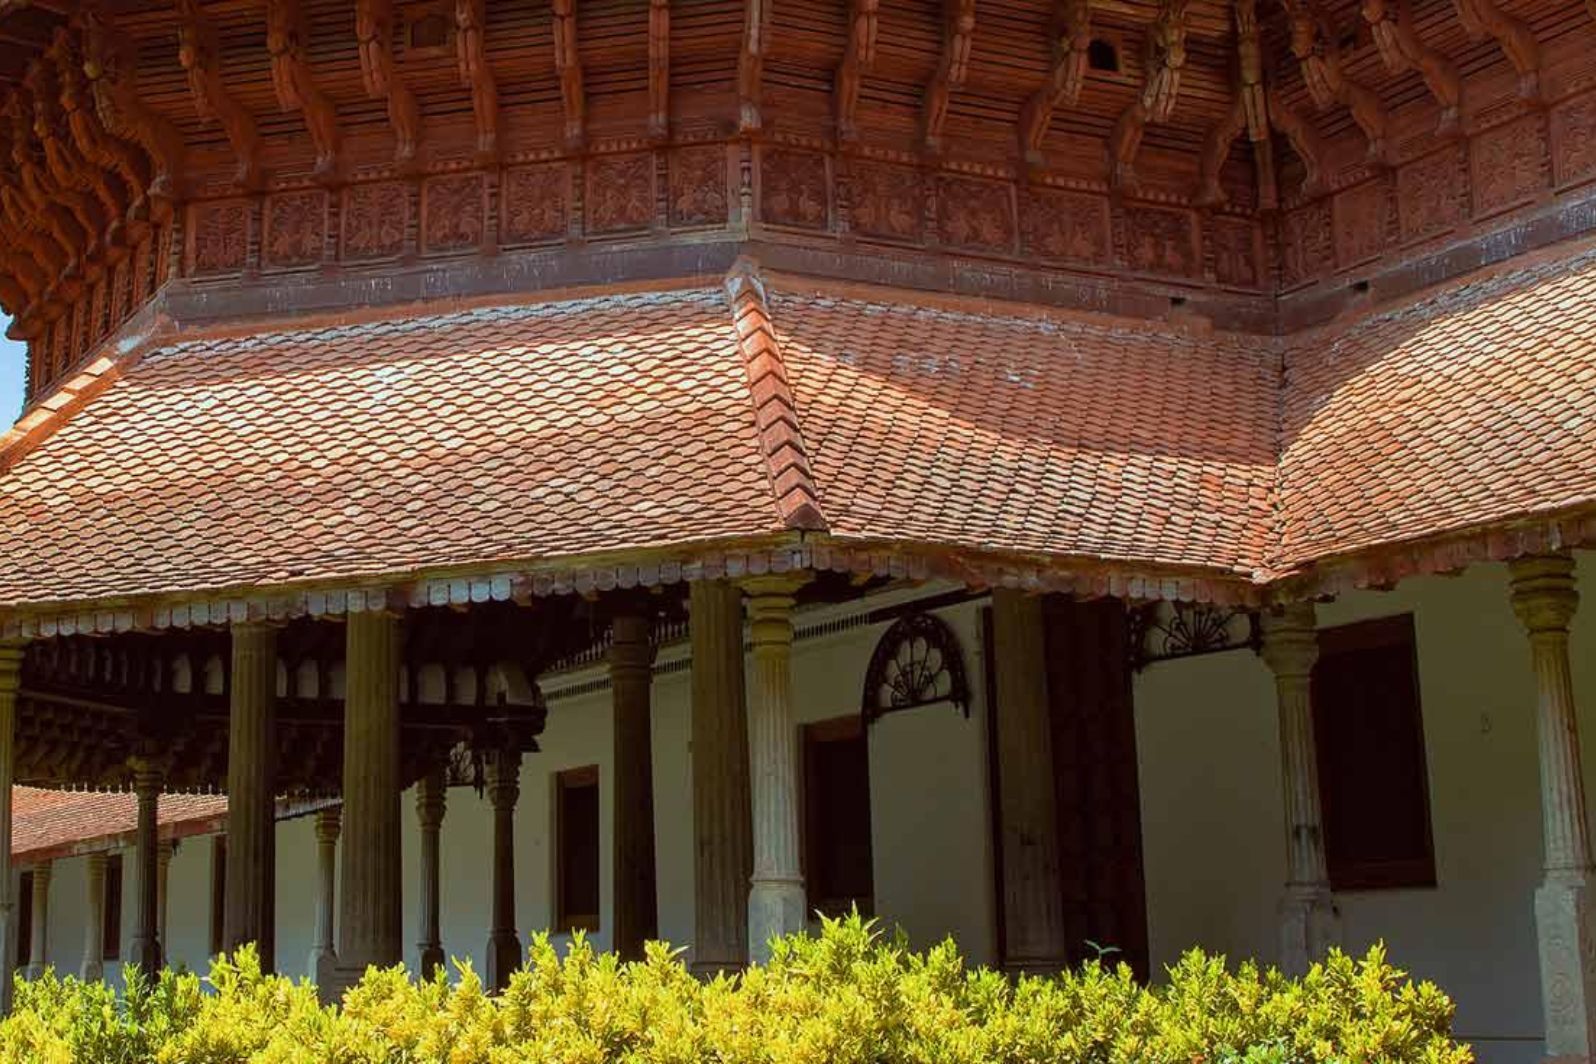 kuthira maliga palace museum in Thiruvananthapuram